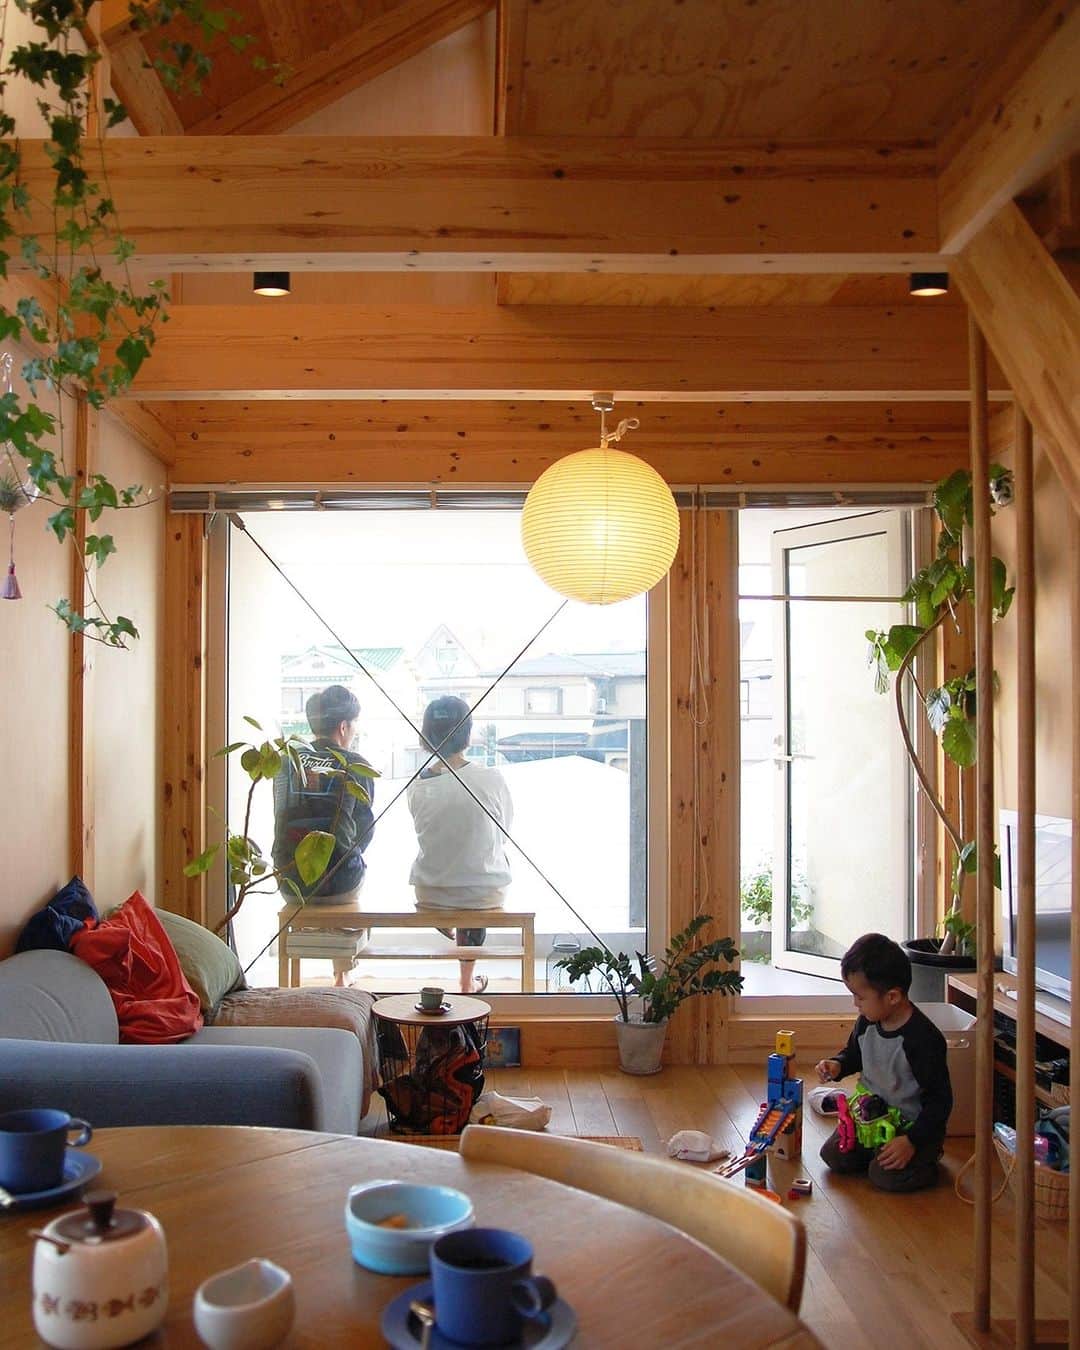 田中工務店／大阪／木の家のインスタグラム：「. 子どもとの時間も夫婦の時間も大切にできる 暖かい木の家。  忙しい毎日にも 大切な時間を、ほっと一息つける時間を 忘れることなくもたらしてくれる。  #tanakakomuten_kurashi   すべての人に、豊かな人生を。 @tanaka.komuten は、大切な人との豊かな時間という価値を、設計士とつくる木の家づくりを通してお客様にお届けしたい、大阪北摂・吹田市にある工務店です。ぜひフォローください🤲🏻✨  誰も教えてくれない『住まいのレシピ』をメルマガ📮で好評発信中。詳細は @sumai.no.recipe をご覧ください。  #工務店がつくる家 #家づくり記録 #家づくりアイデア #暮らしの記録 #田舎暮らし #木の家 #家づくり記録 #家づくりアイデア #暮らしの記録 #田舎暮らし #育児日記 #北摂ママ #ベビスタグラム #部屋作り #おうちづくり #注文住宅 #大阪注文住宅 #新築 #マイホーム #マイホーム ＃玄関ドア ＃吹き付け  @hokusetsu_camp 絶賛応援中 北摂でキャンプをしよう🏕✨」